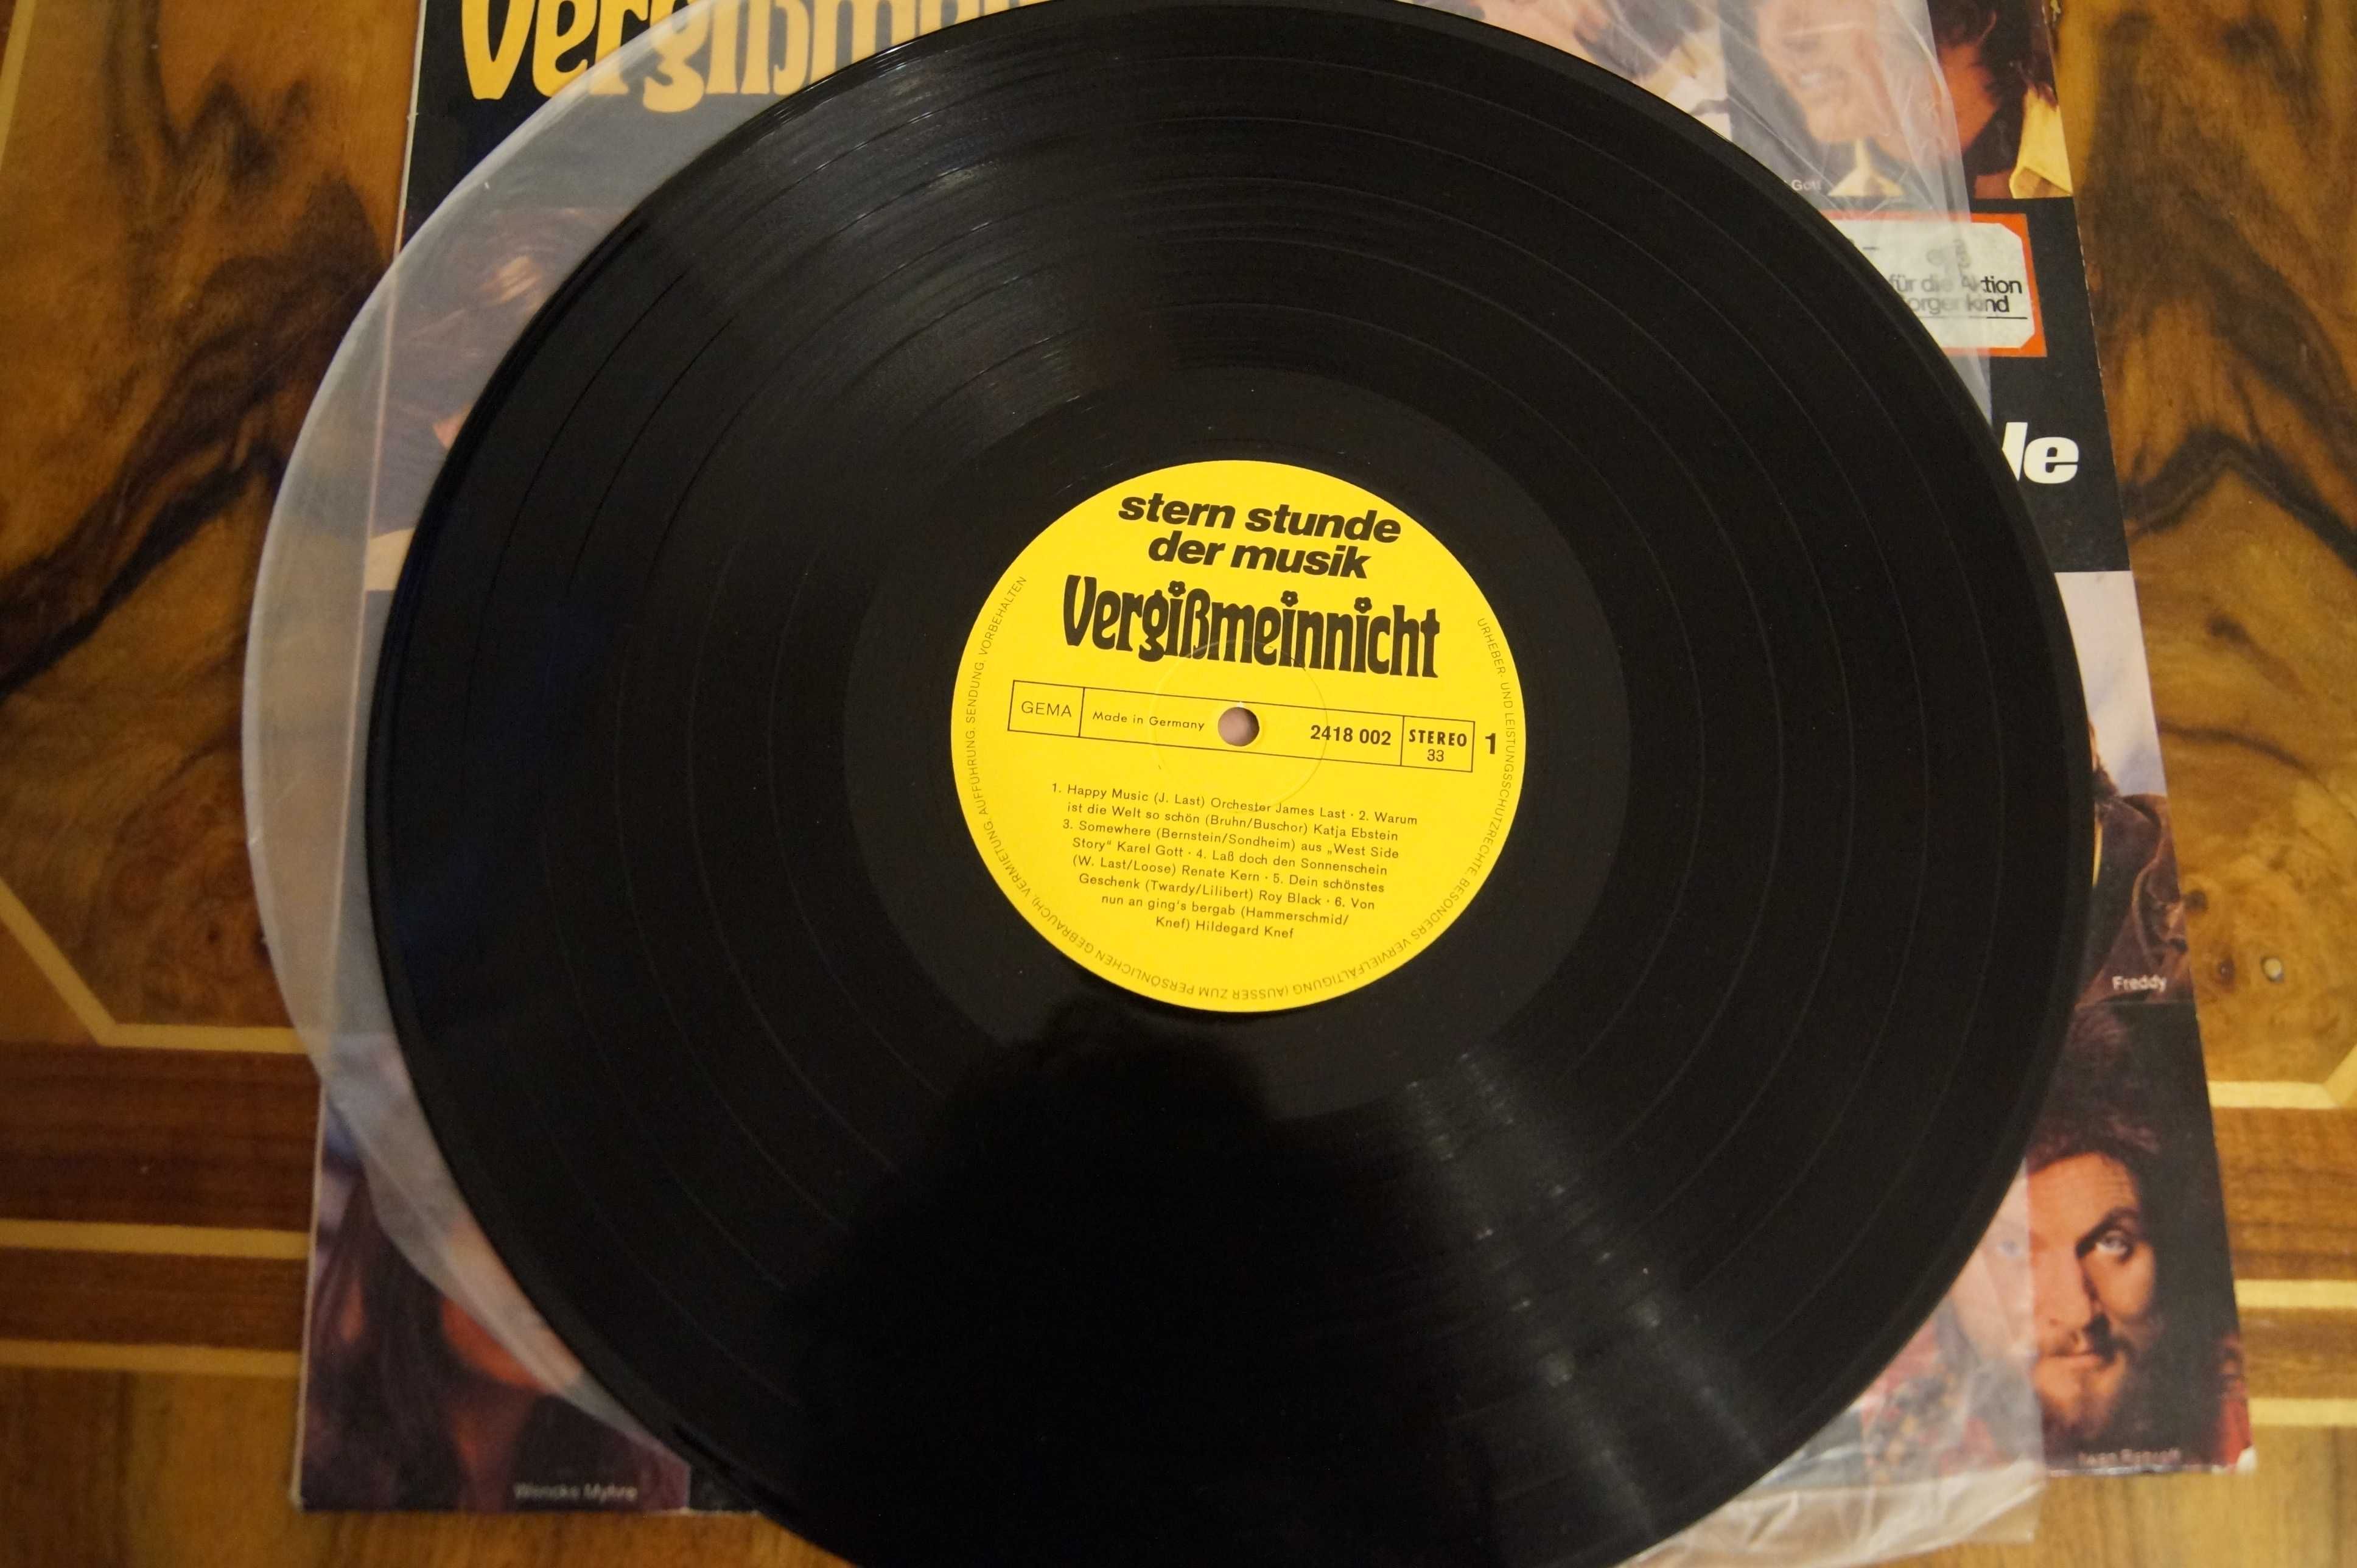 Vergibmeinnicht   Ster- Stunde der music winyl vinyl